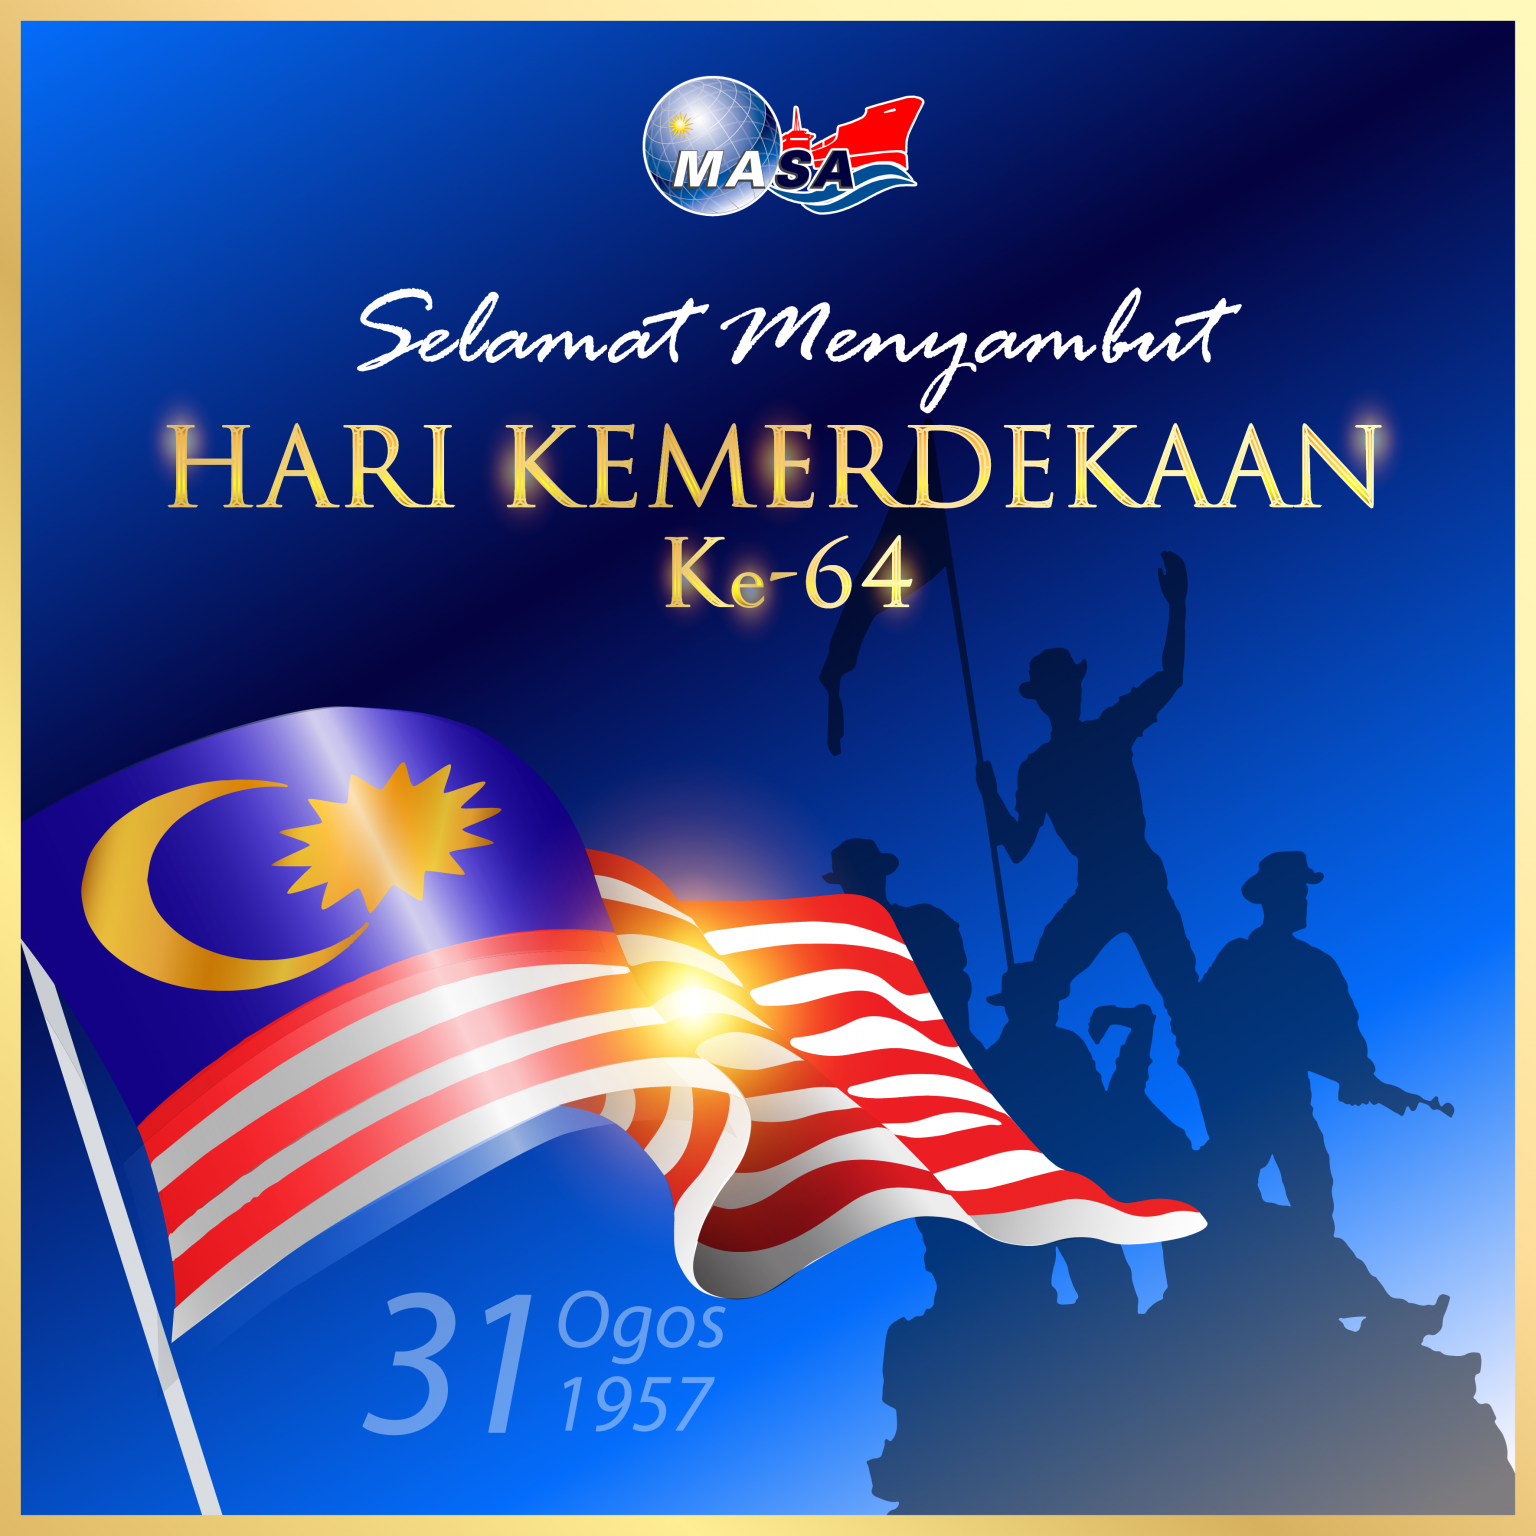 Selamat Menyambut Hari Kemerdekaan Masa Malaysia Shipowners Association 1836